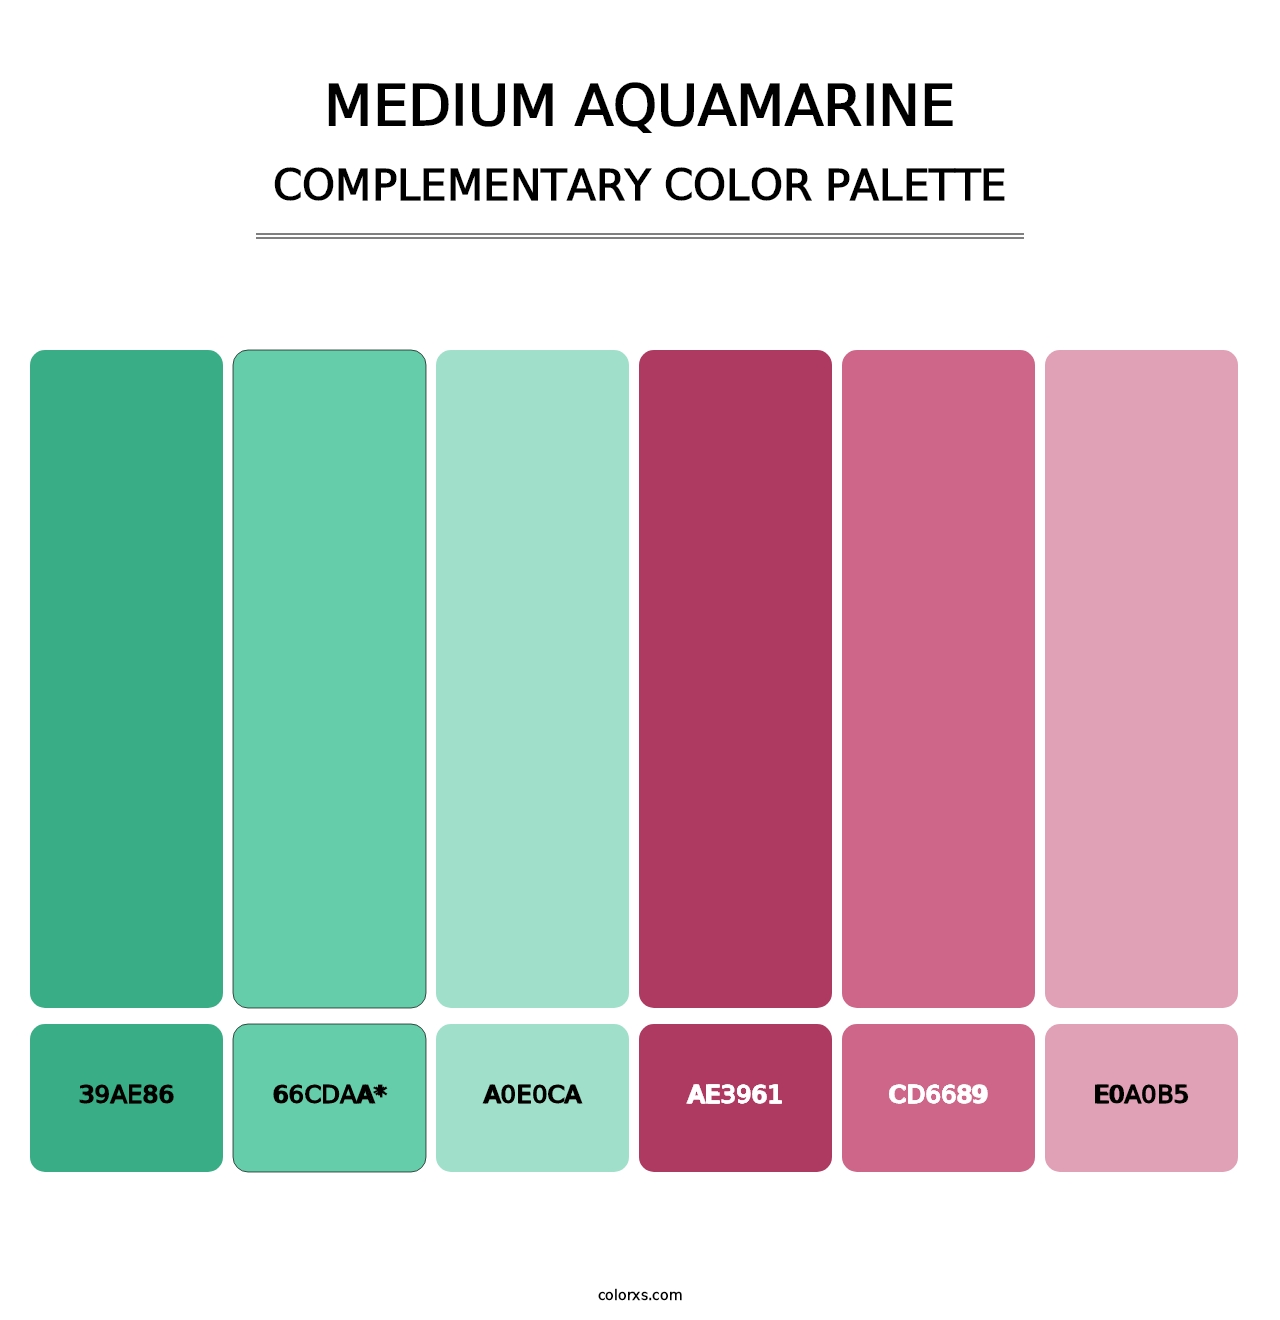 Medium Aquamarine - Complementary Color Palette